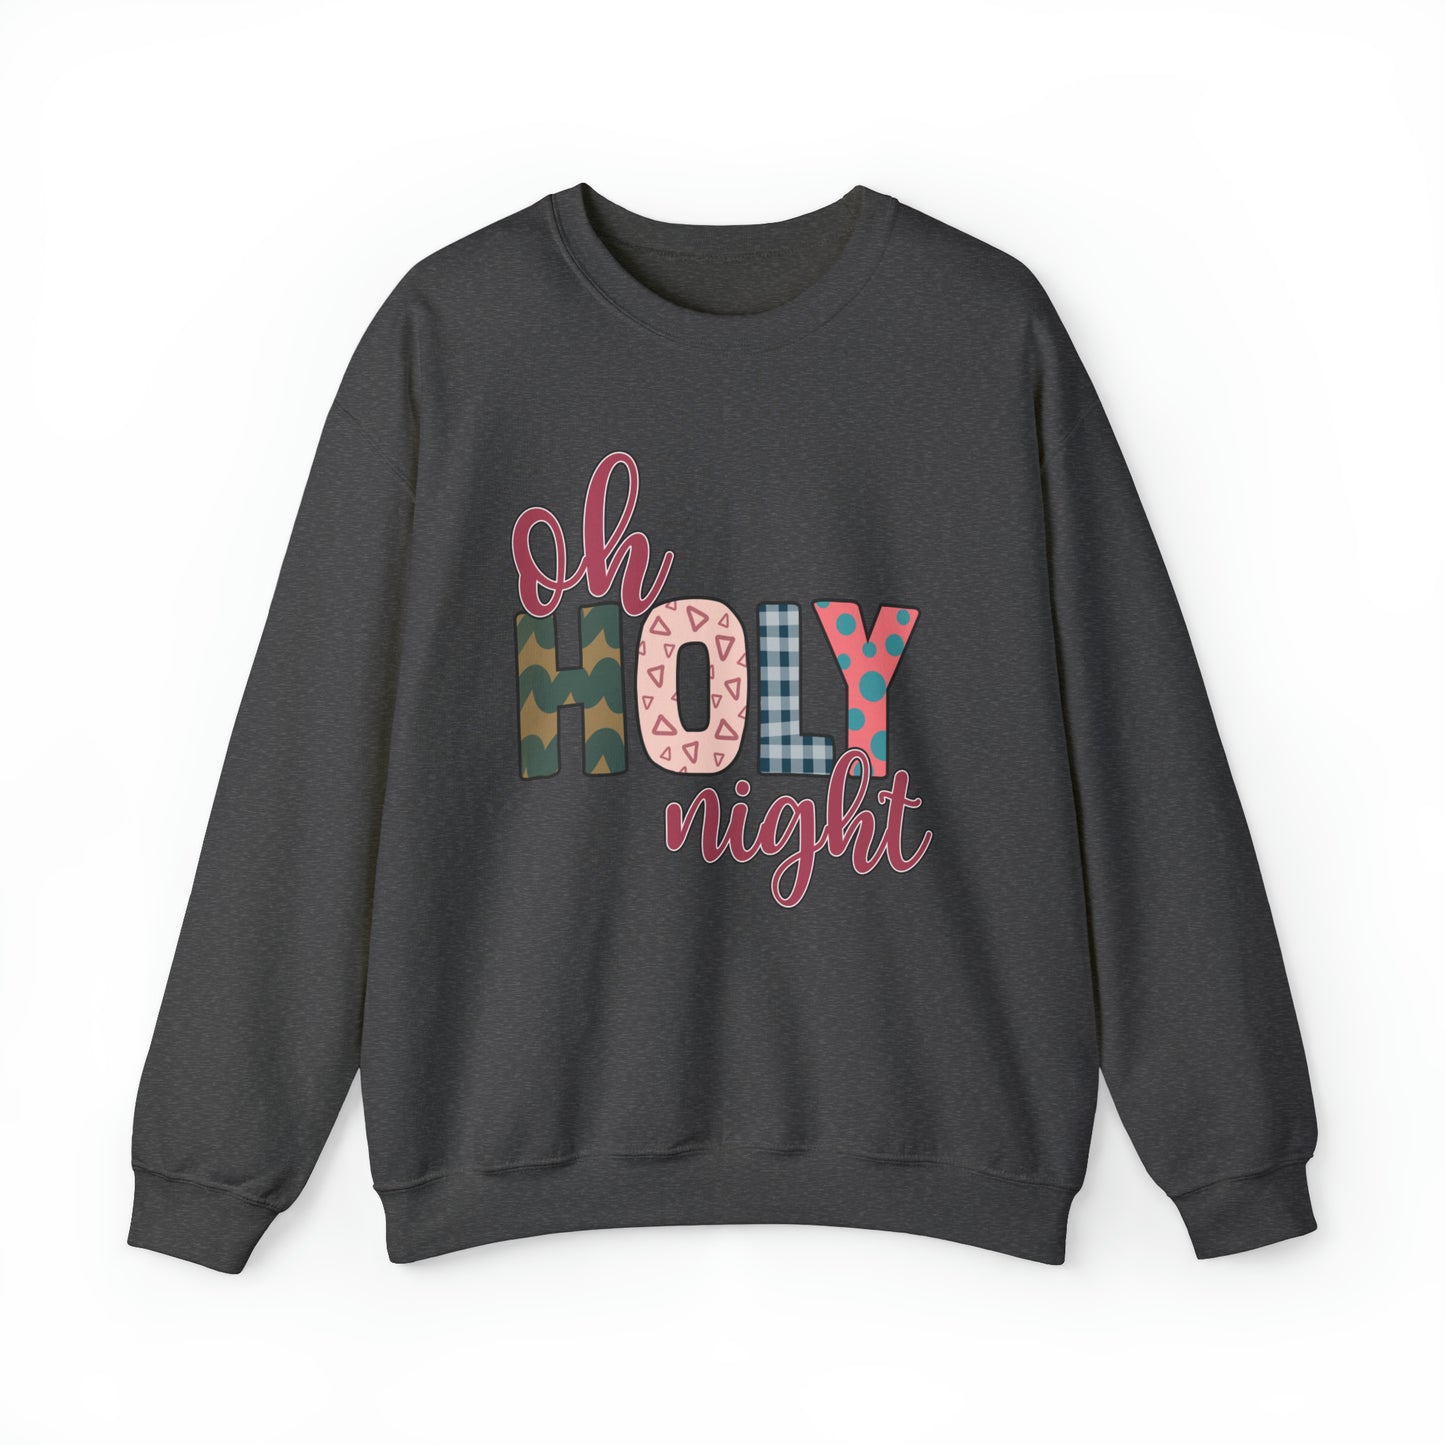 Oh Holy Night Women's Christmas Sweatshirt